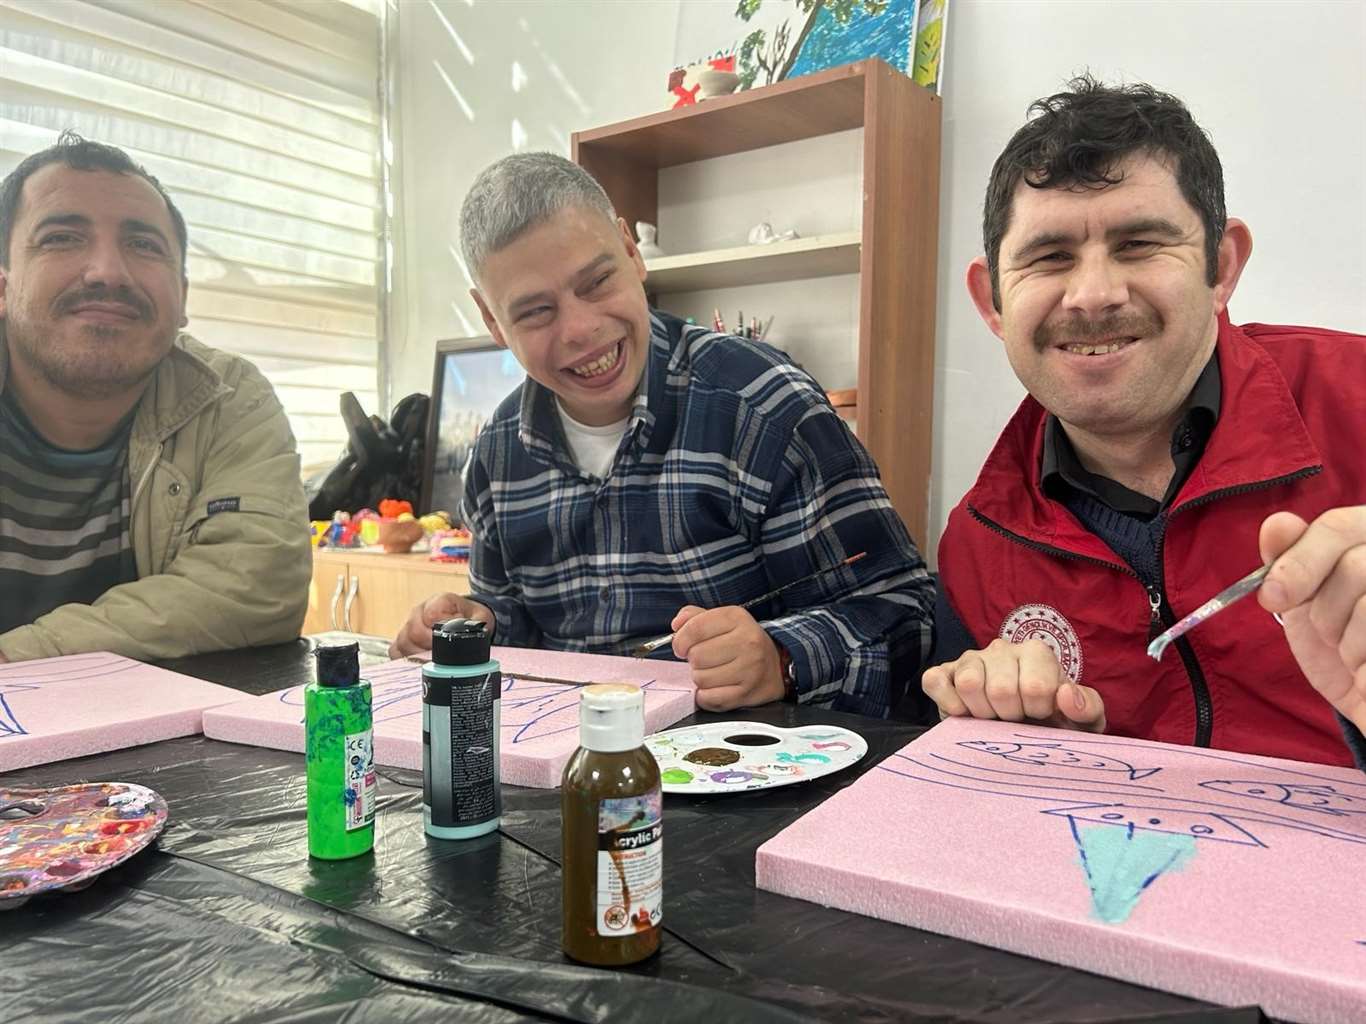  Muğla'da engelli bireyler kültür sanat çalışmalarına katılıyor haberi